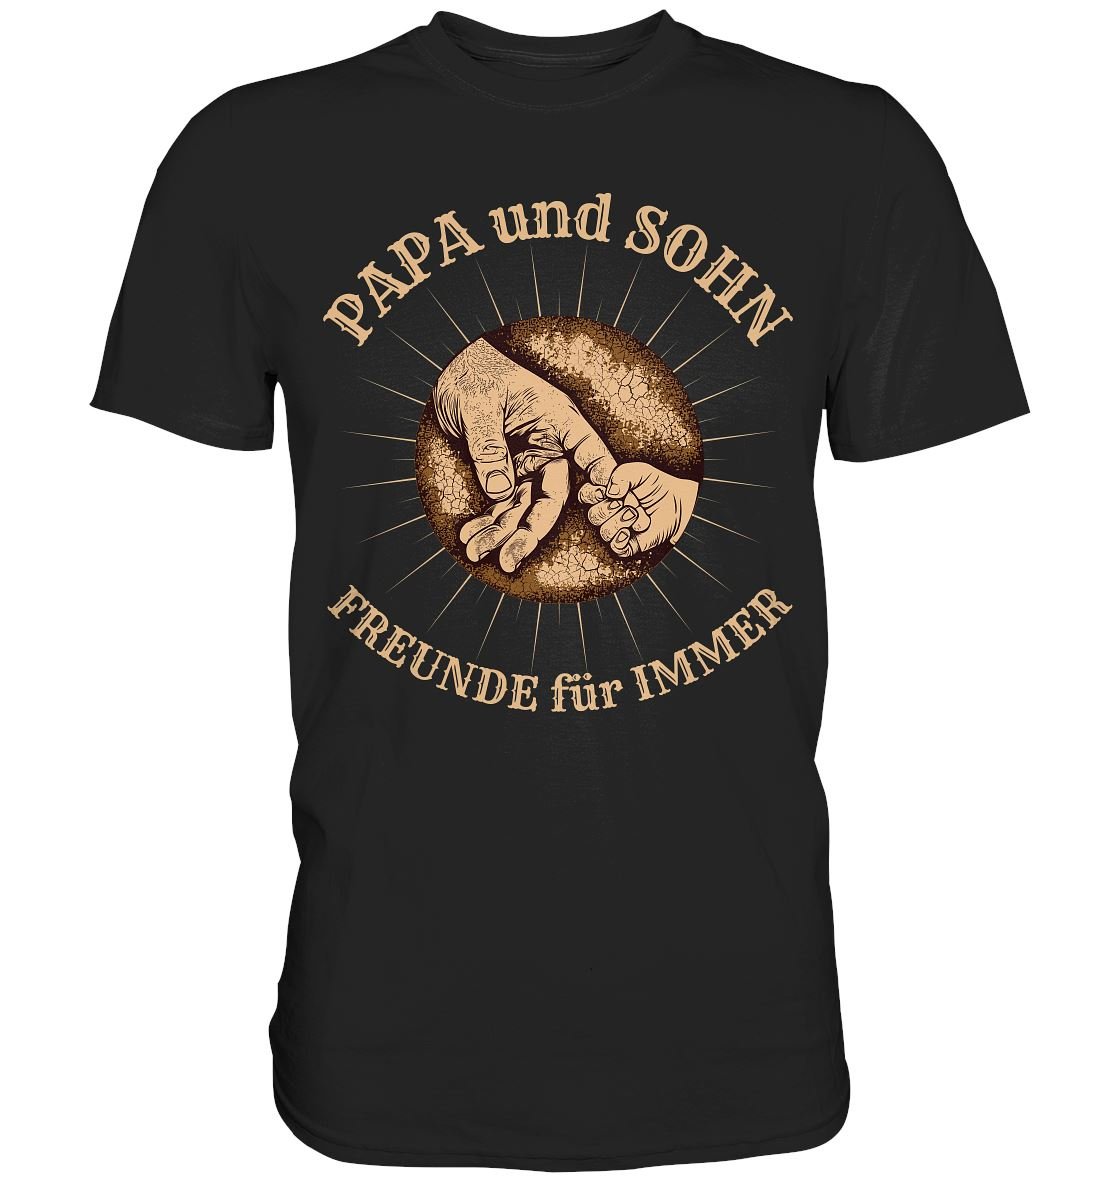 PAPA und SOHN - Freunde für immer - Premium Shirt - BINYA